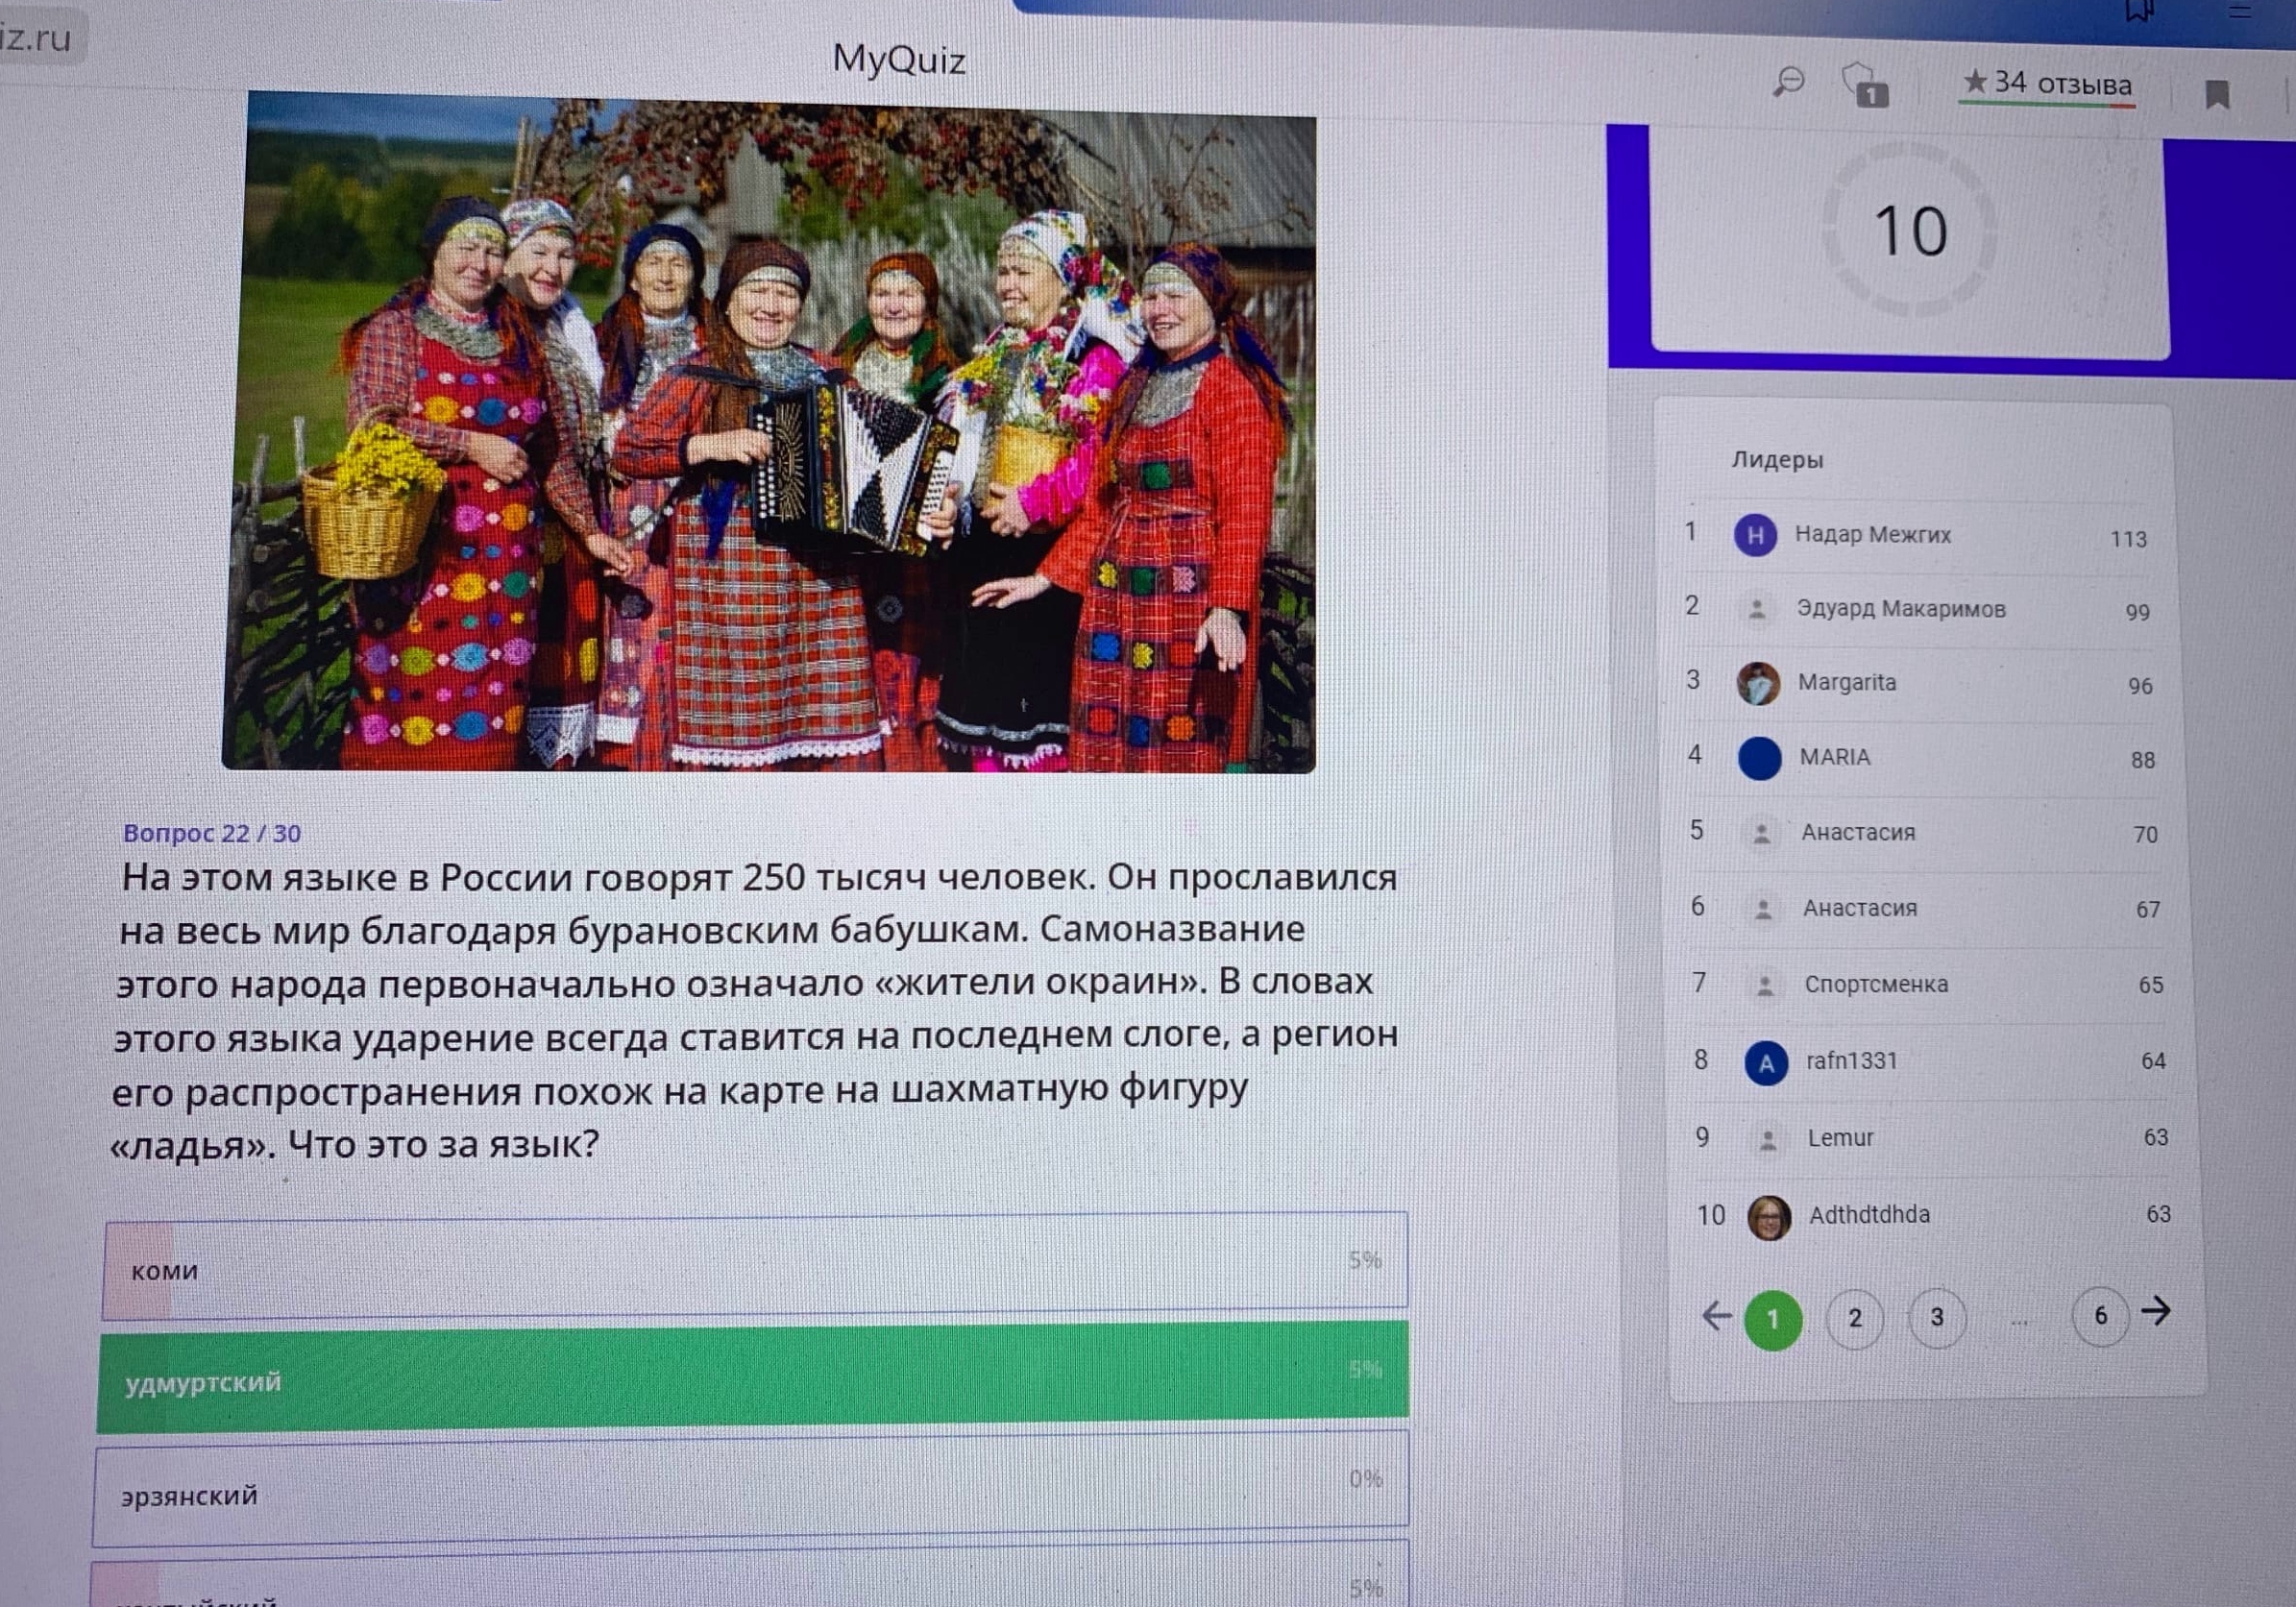 Сценарий ко дню чувашского языка для детей ДОУ